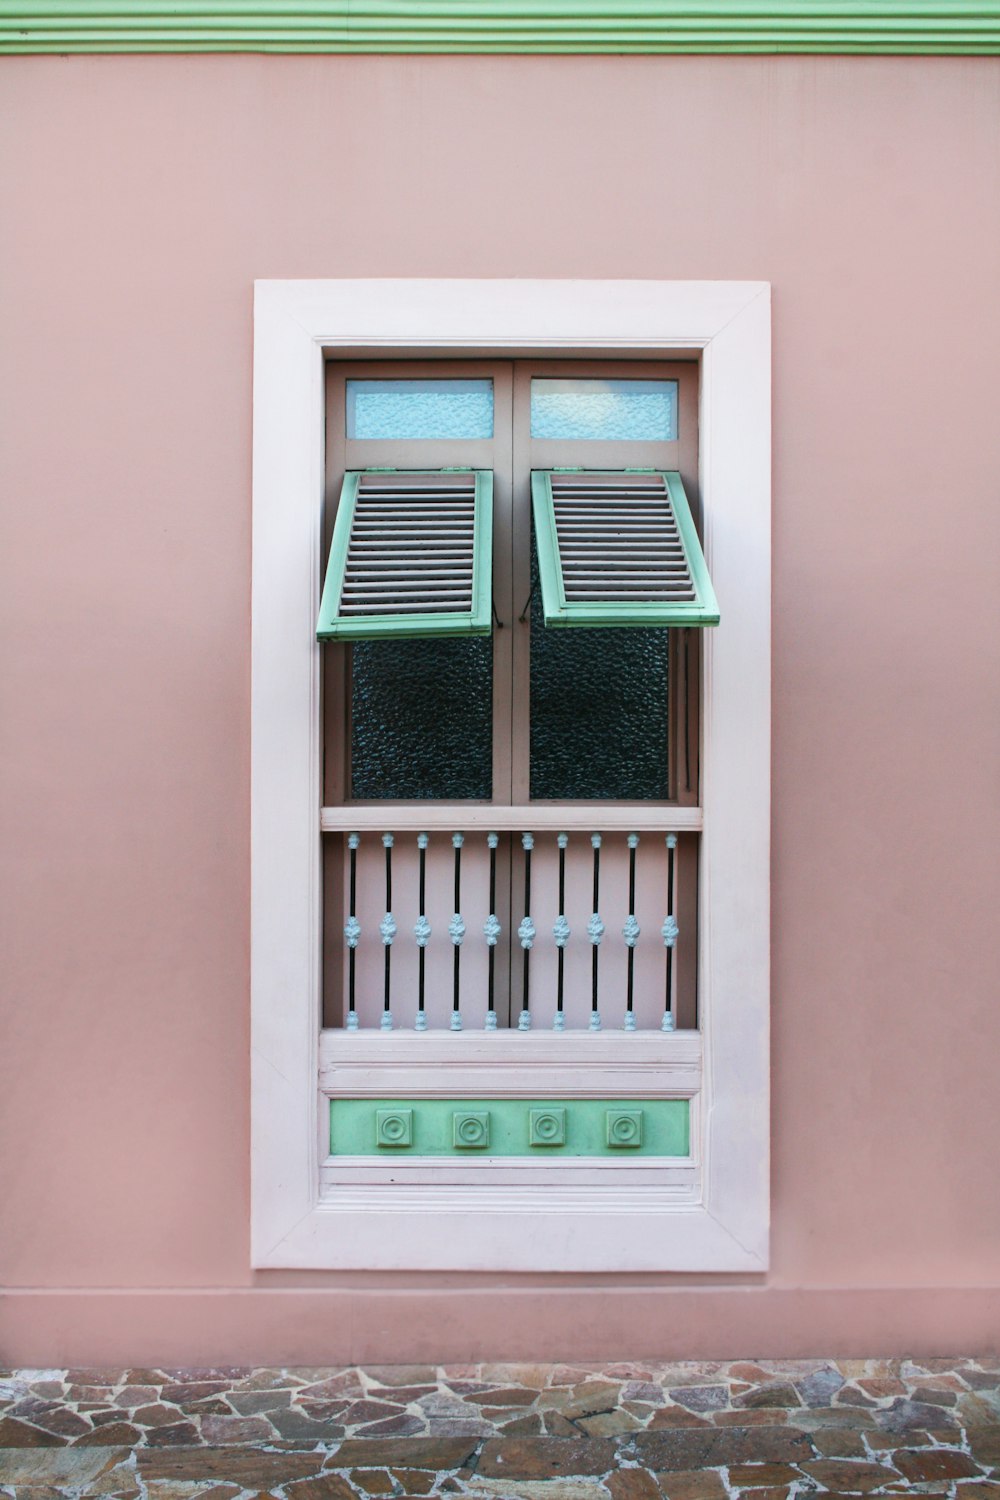 pannello finestra a lamelle in legno verde acqua bianco aperto e marrone